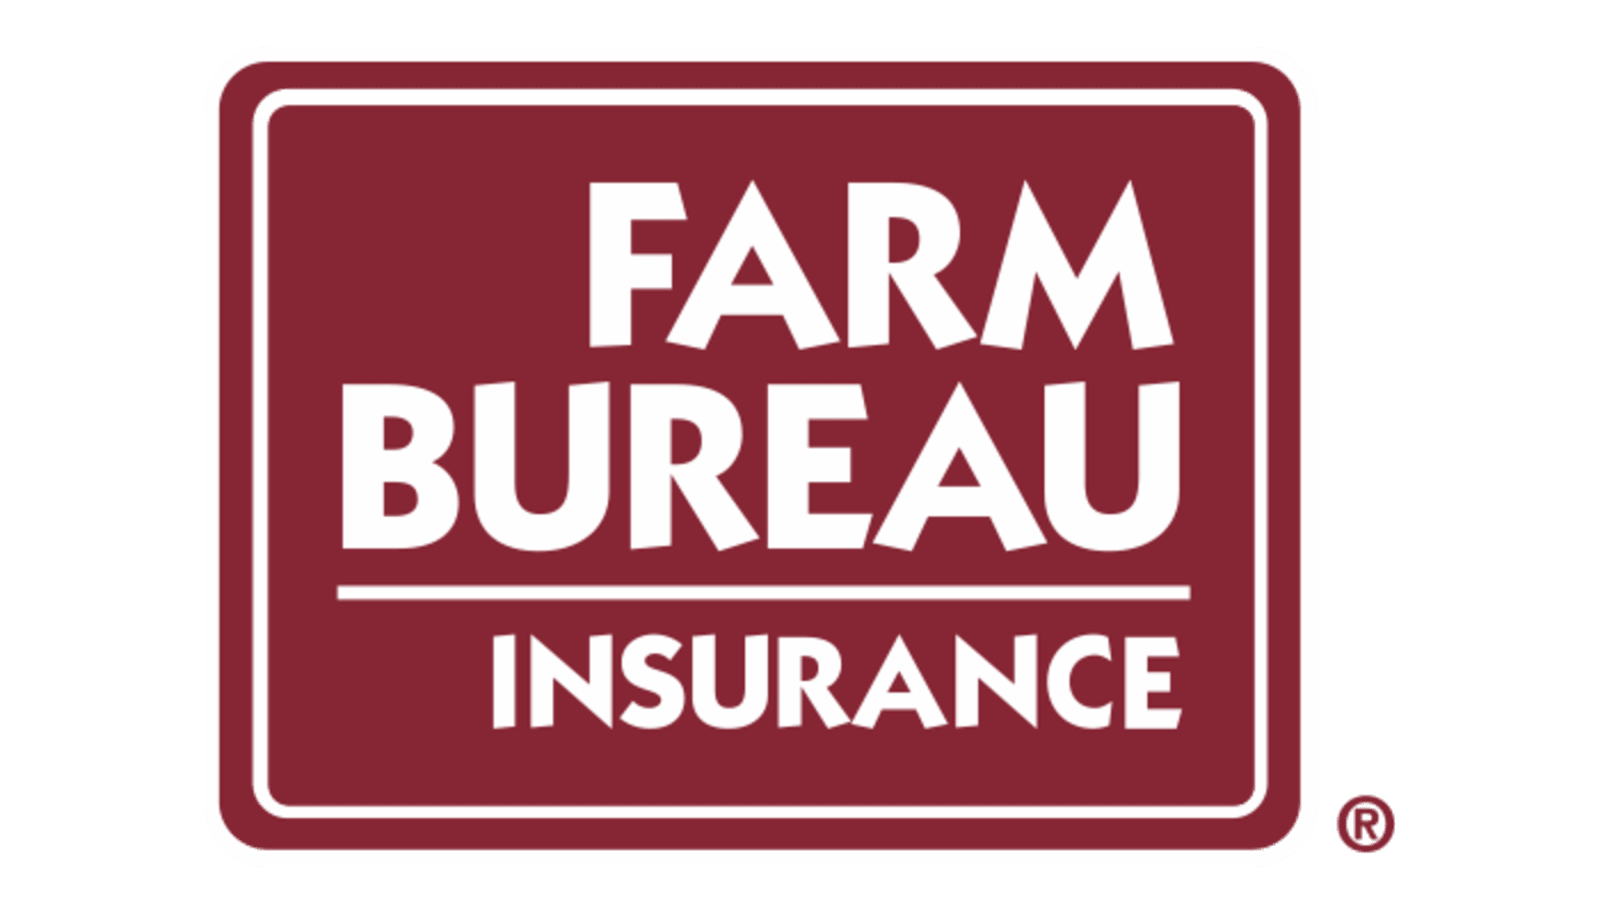 Farm Bureau Insurance Review